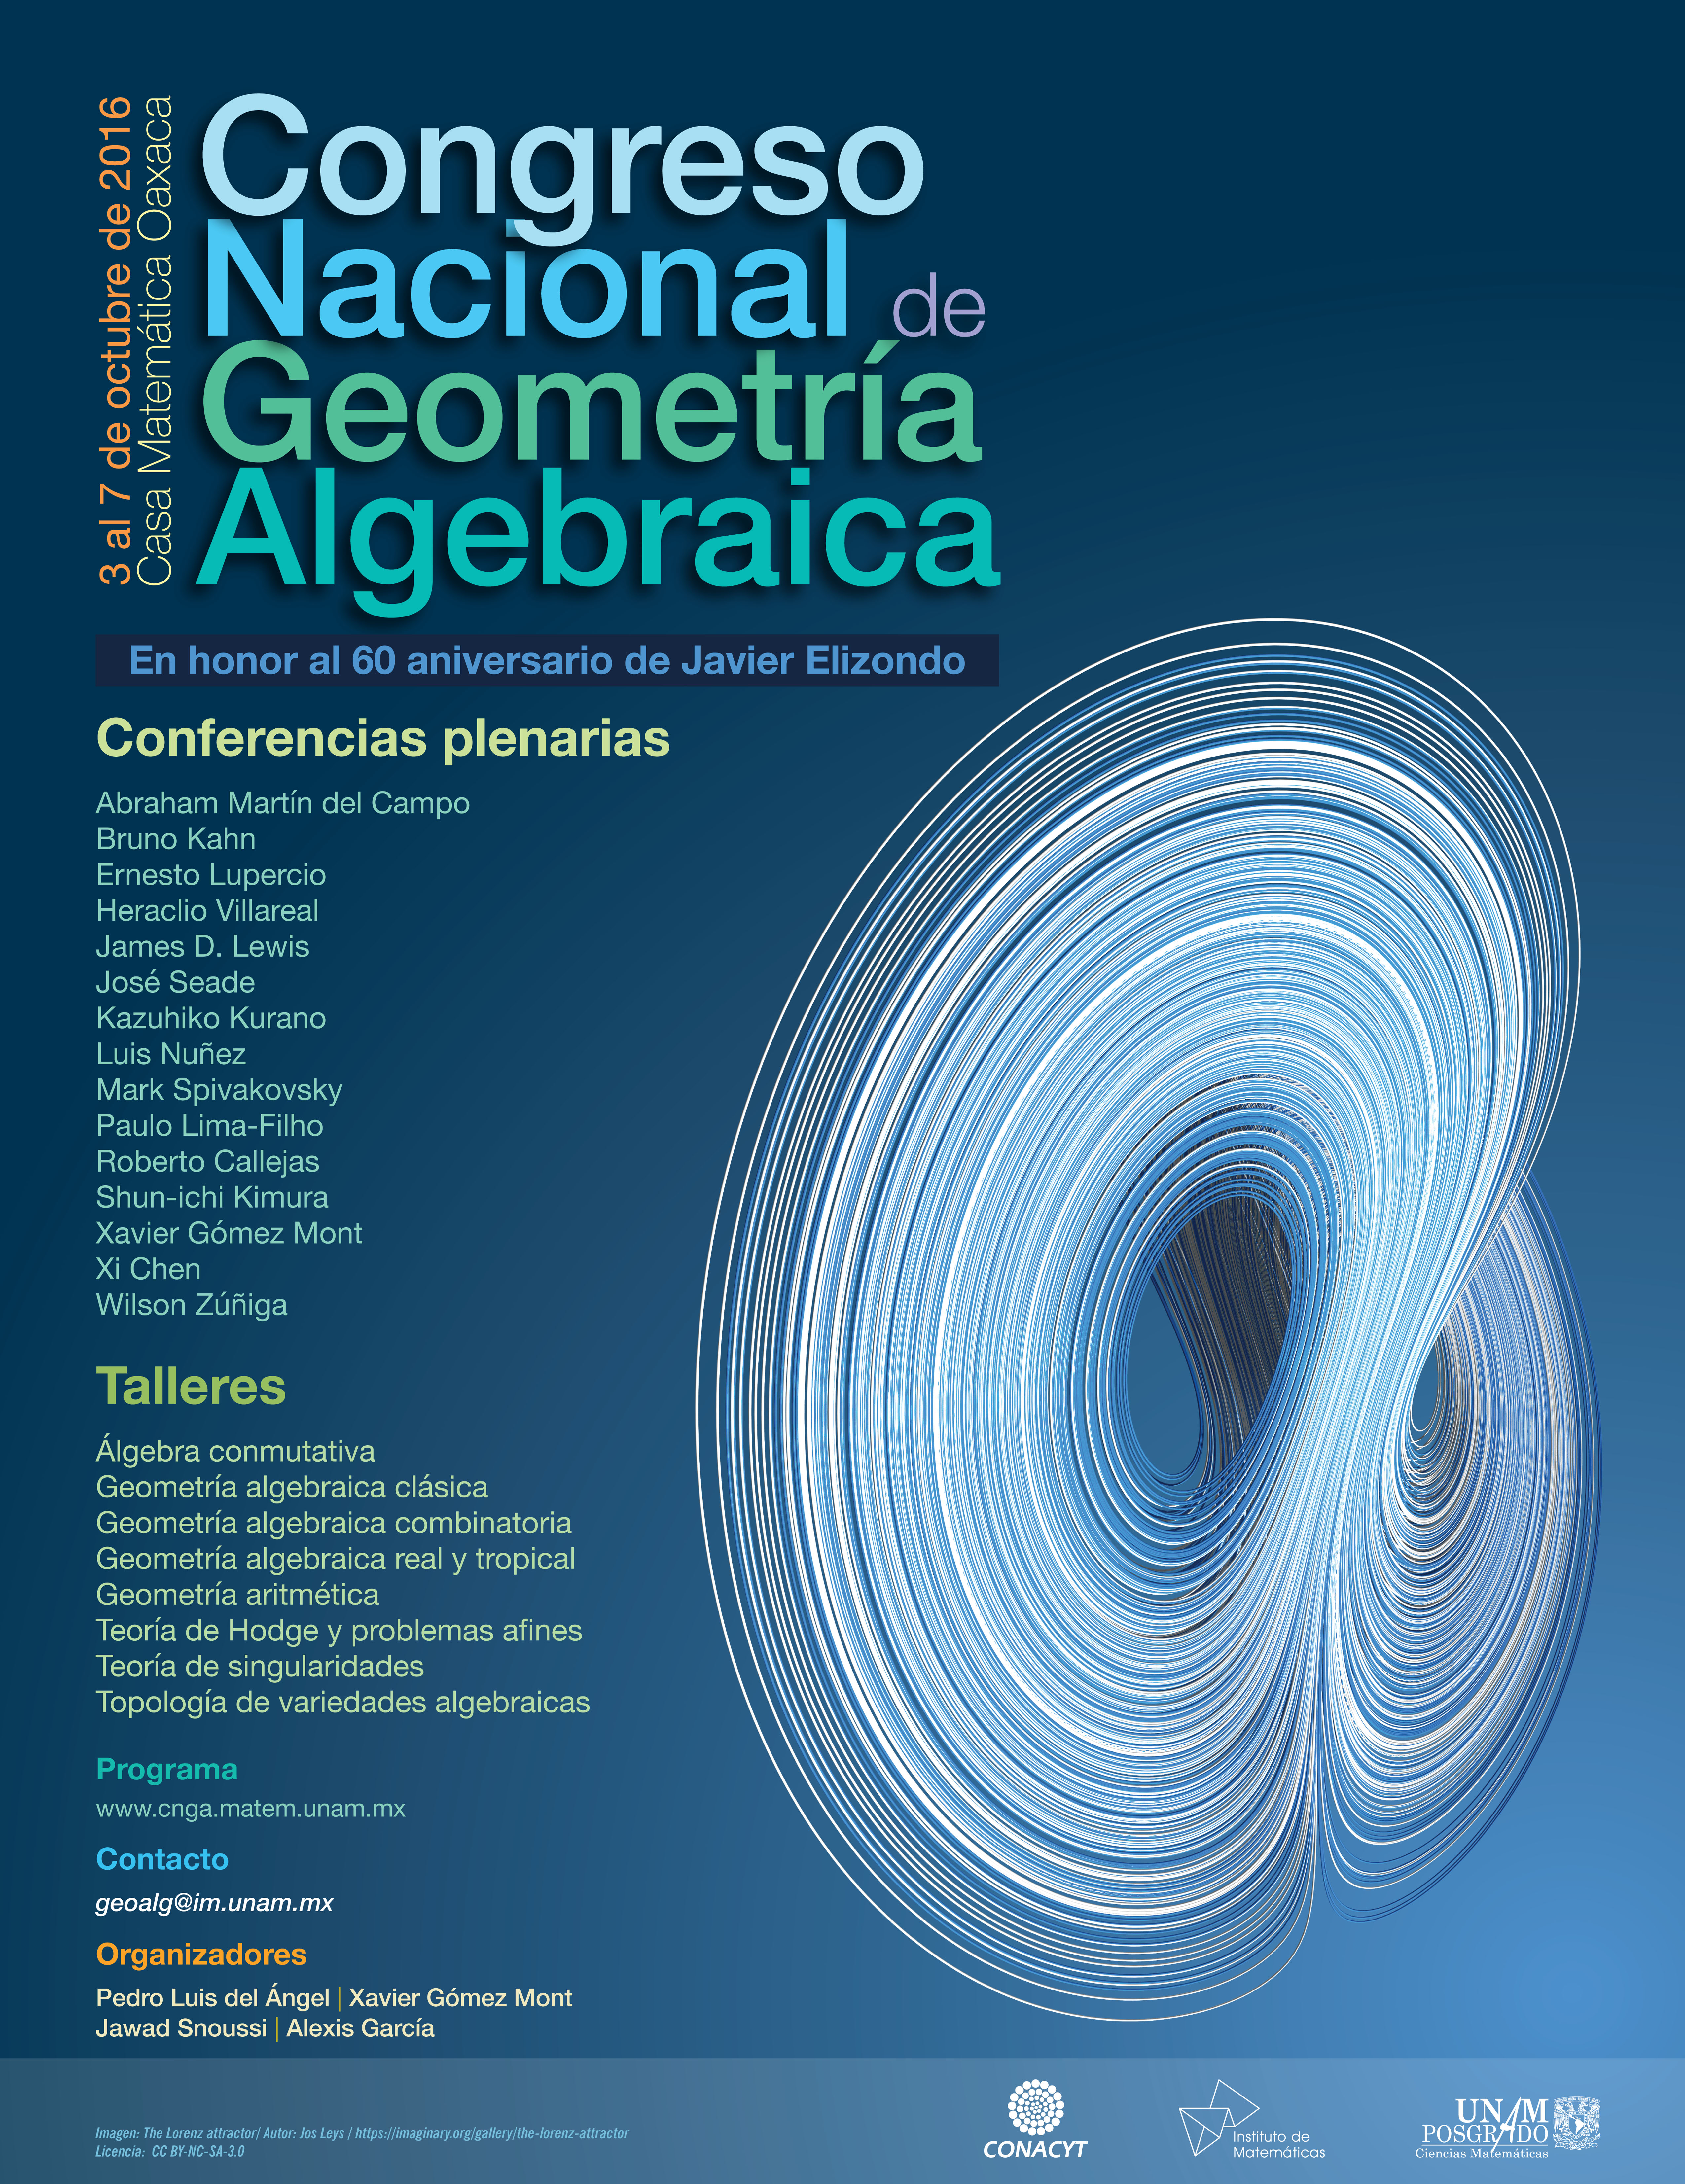 Congreso Nacional de Geometría Algebraica